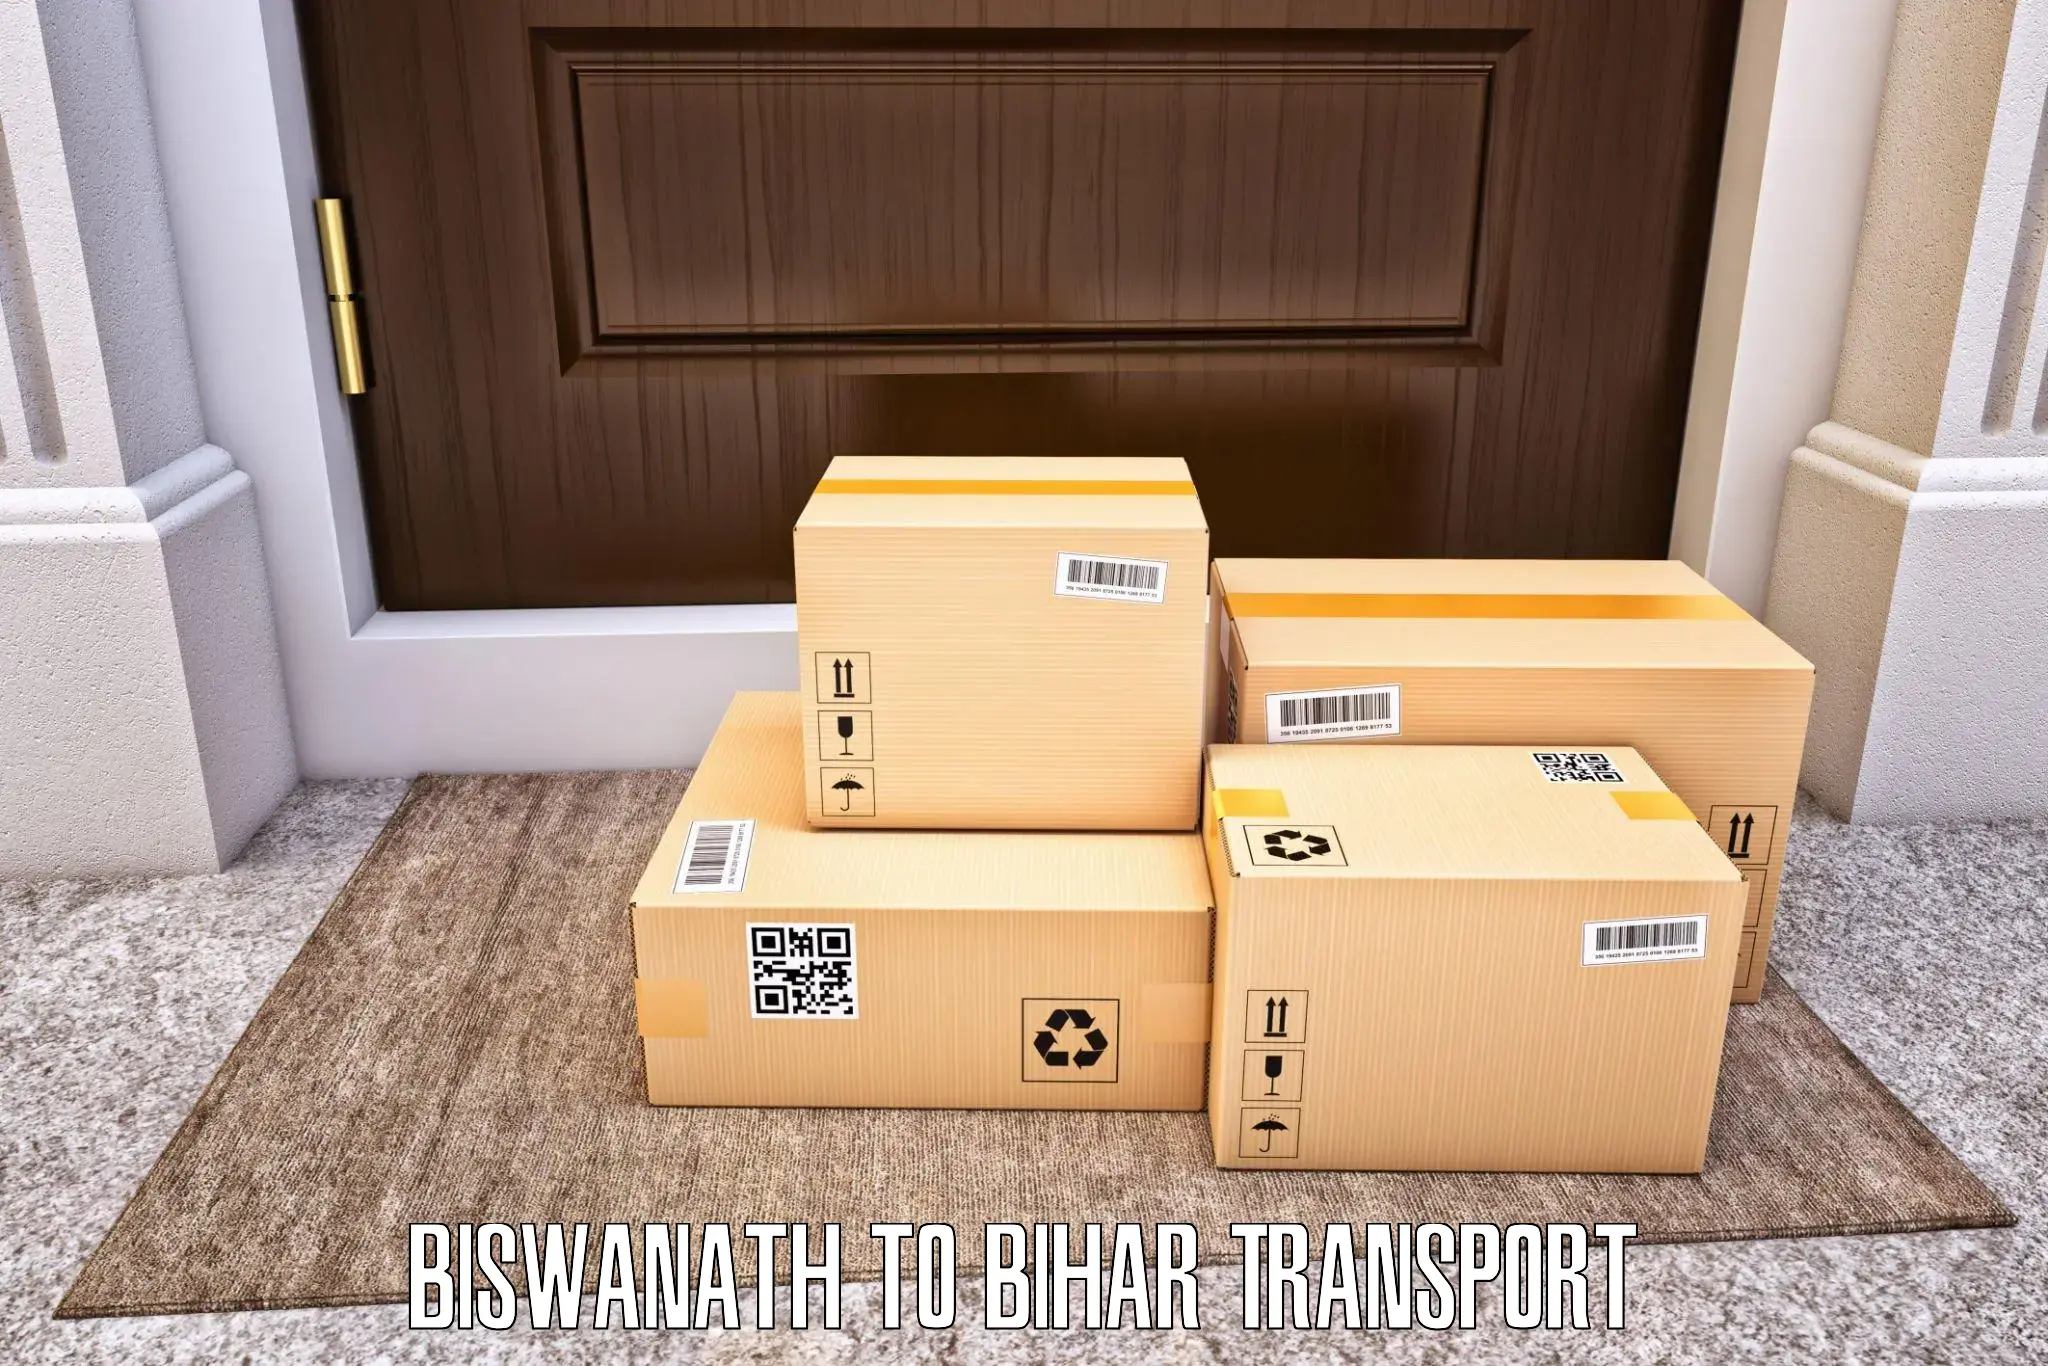 Furniture transport service Biswanath to Gaya